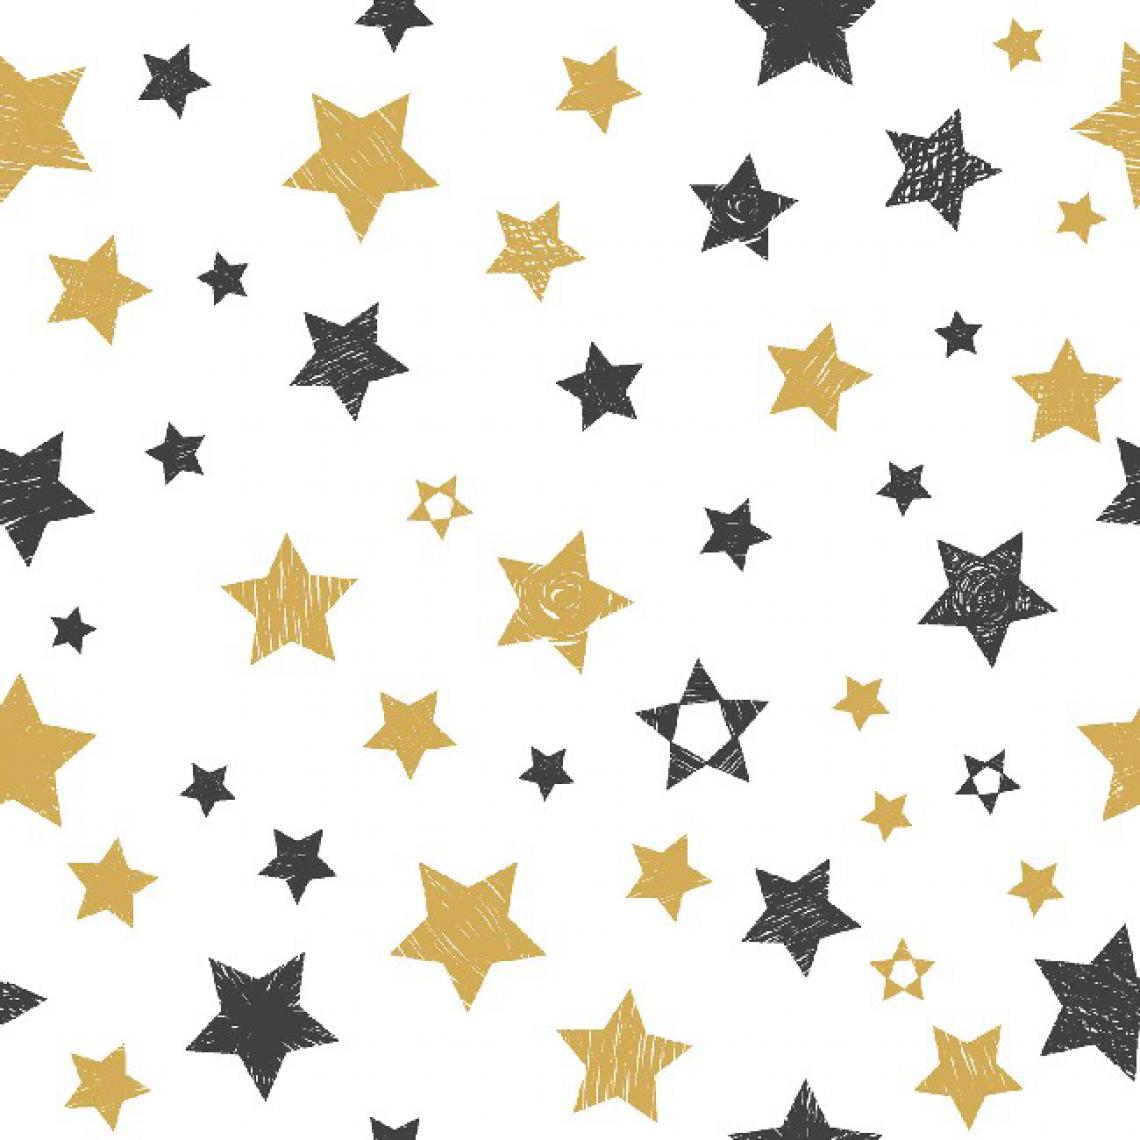 Homemania - HOMEMANIA Tapis Imprimé Stars - Géométrique - Décoration de Maison - Antidérapant - Pour Salon, séjour, chambre à coucher - Multicolore en Polyester, Coton, 100 x 200 cm - Tapis